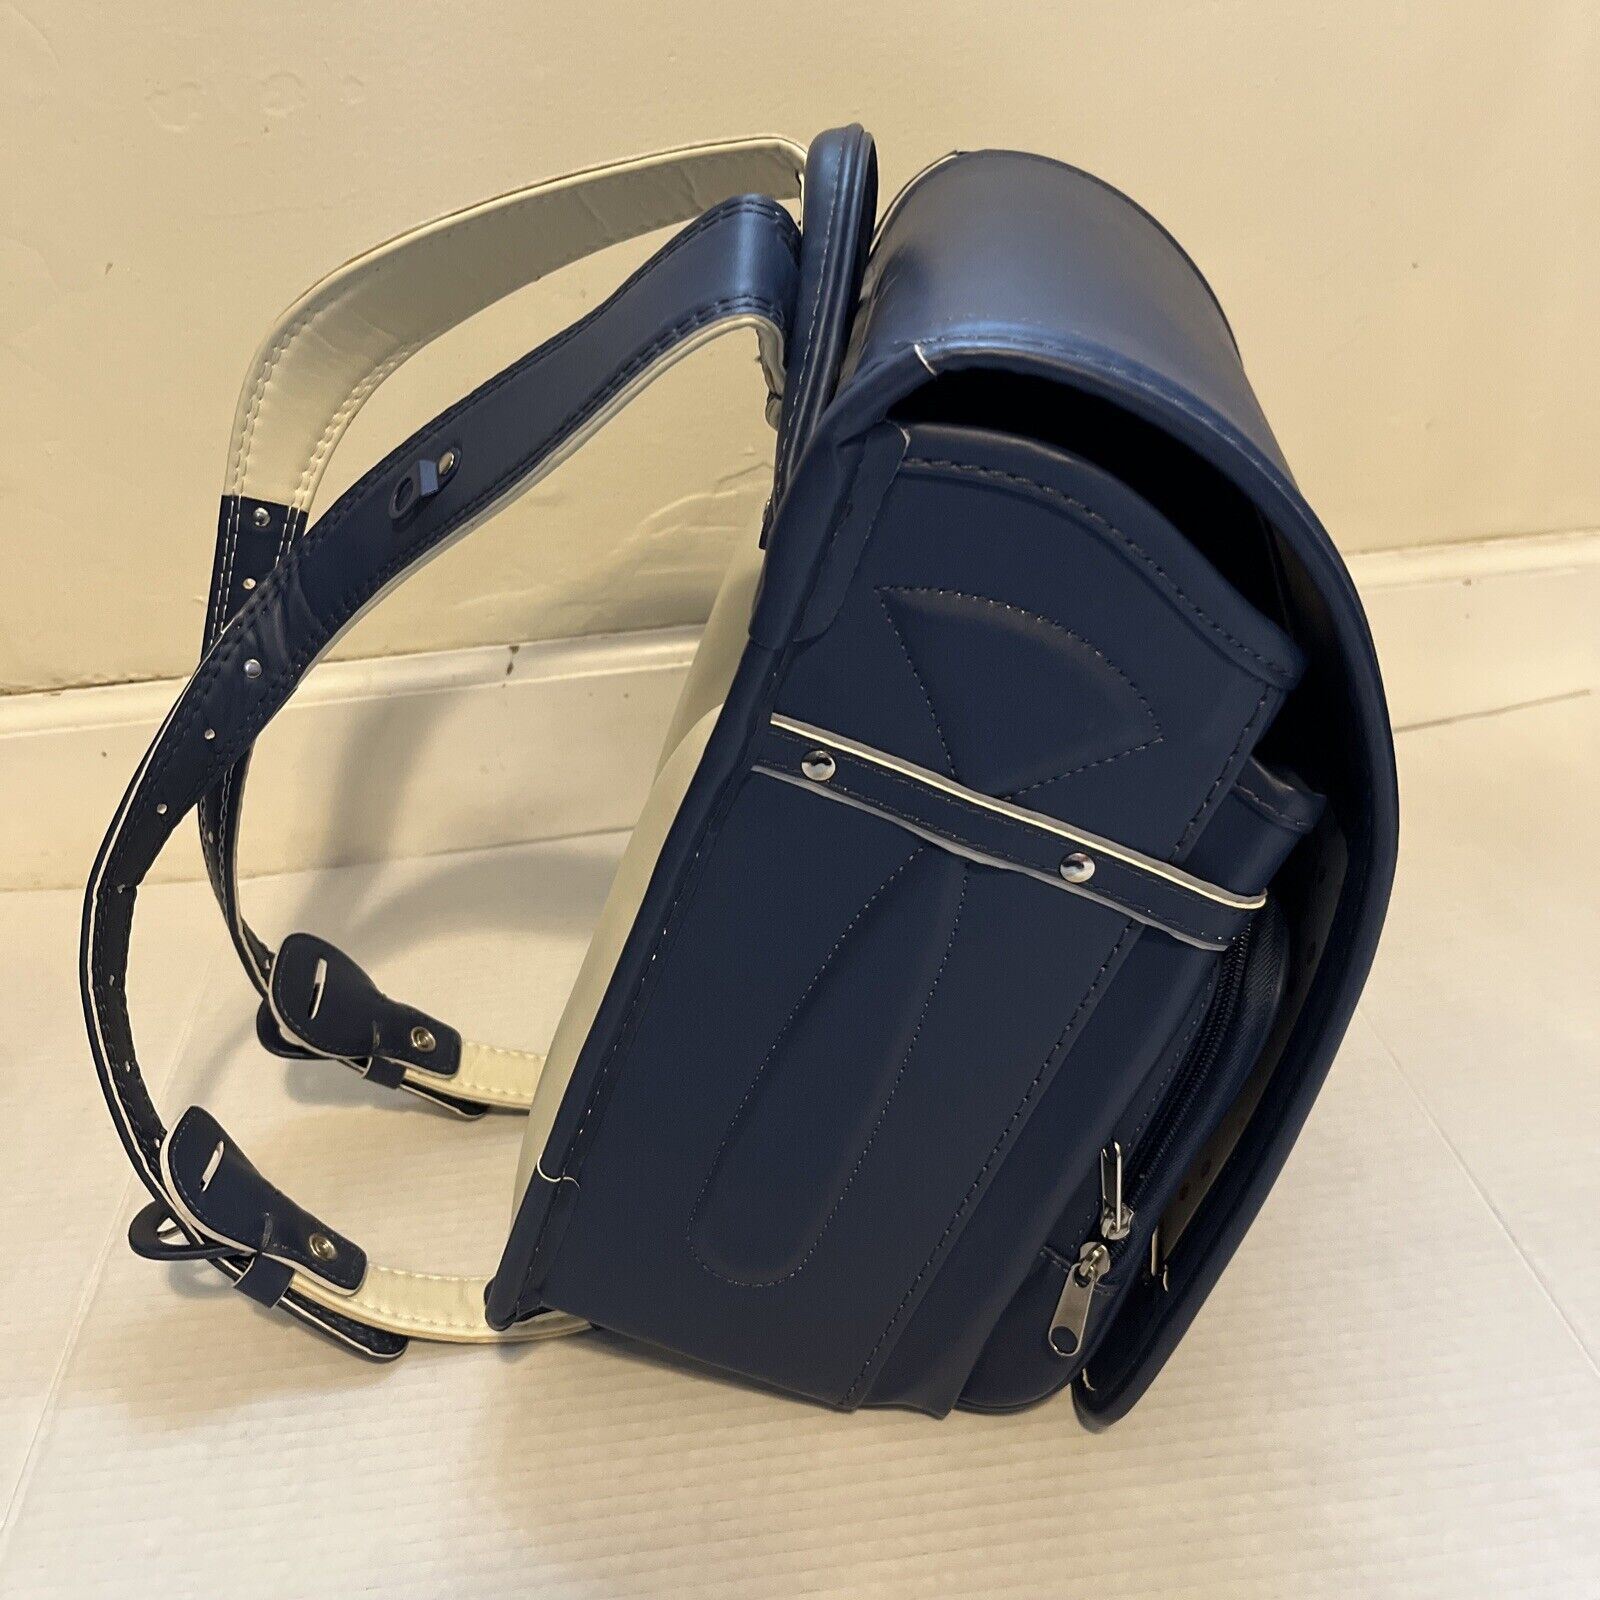 Japanese Randoseru School Bag Backpack Navy Blue New